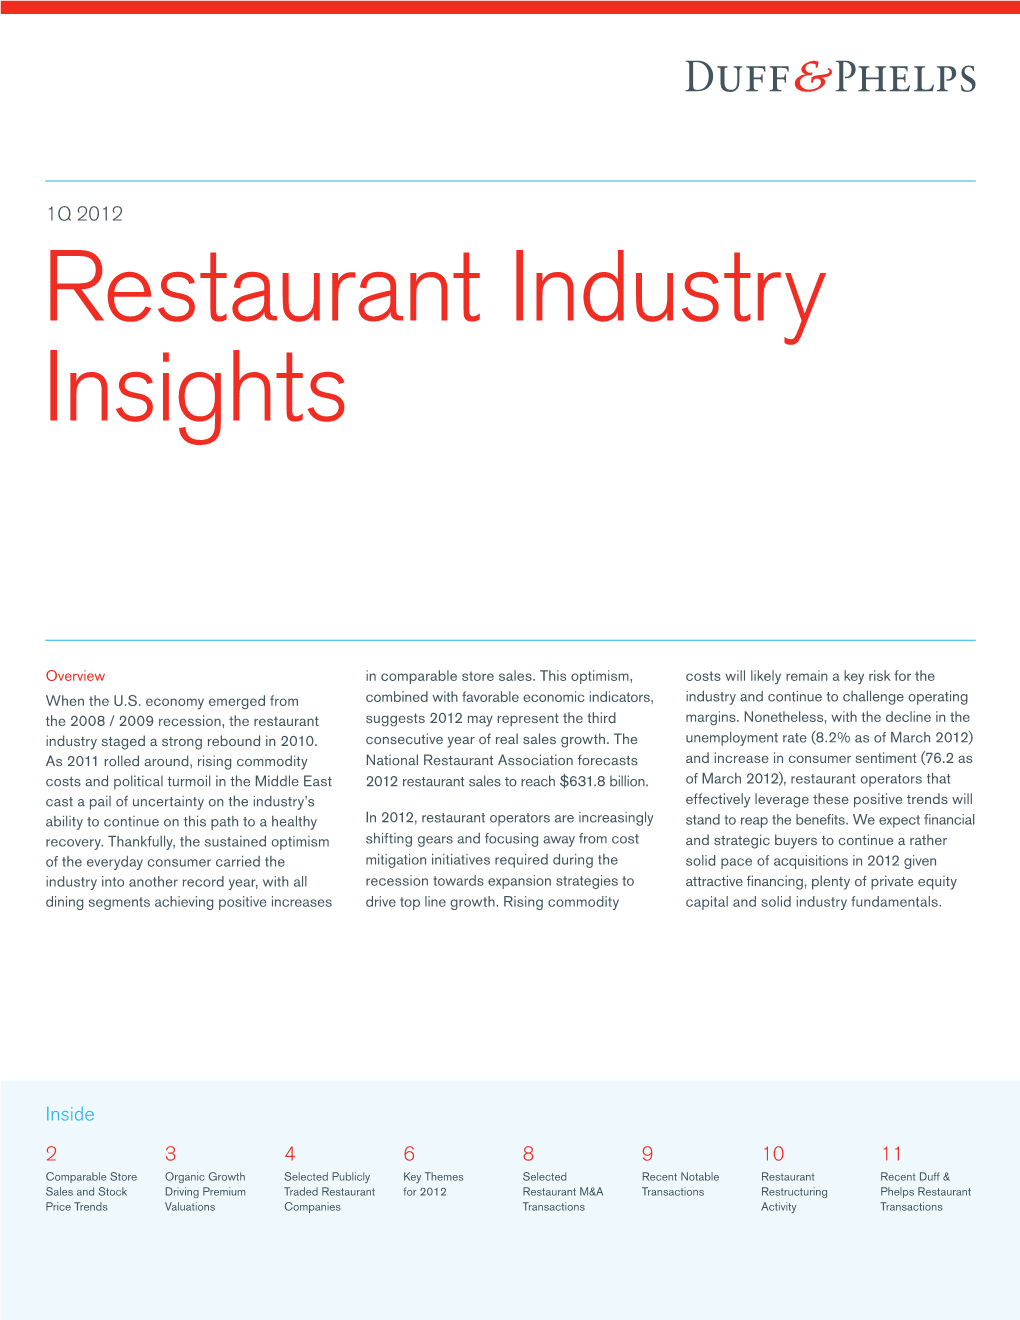 Restaurant Industry Insights